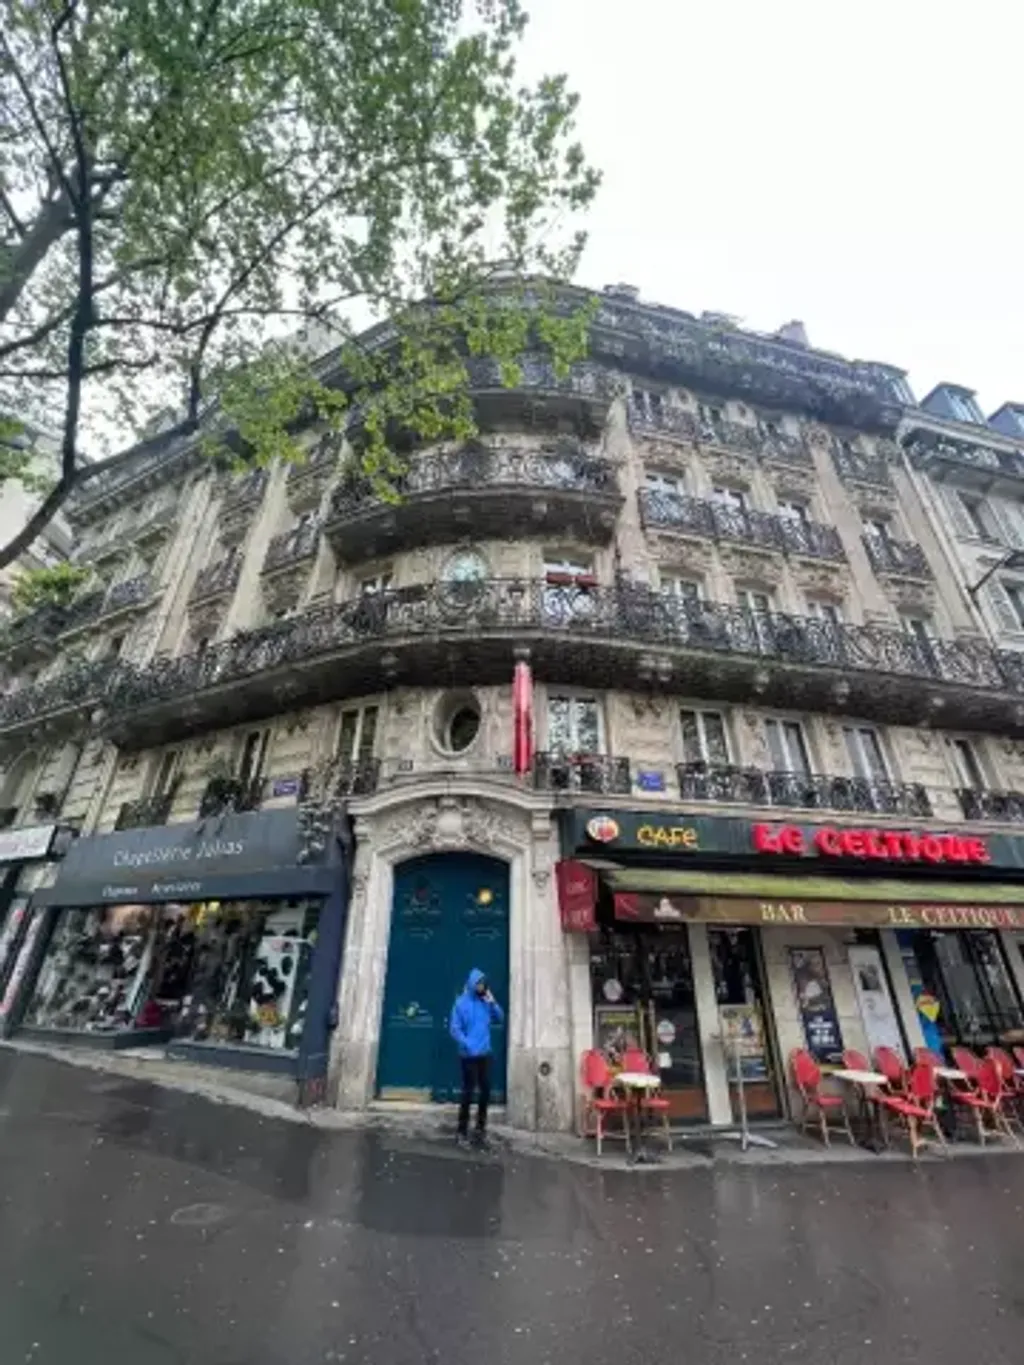 Achat studio à vendre 15 m² - Paris 18ème arrondissement